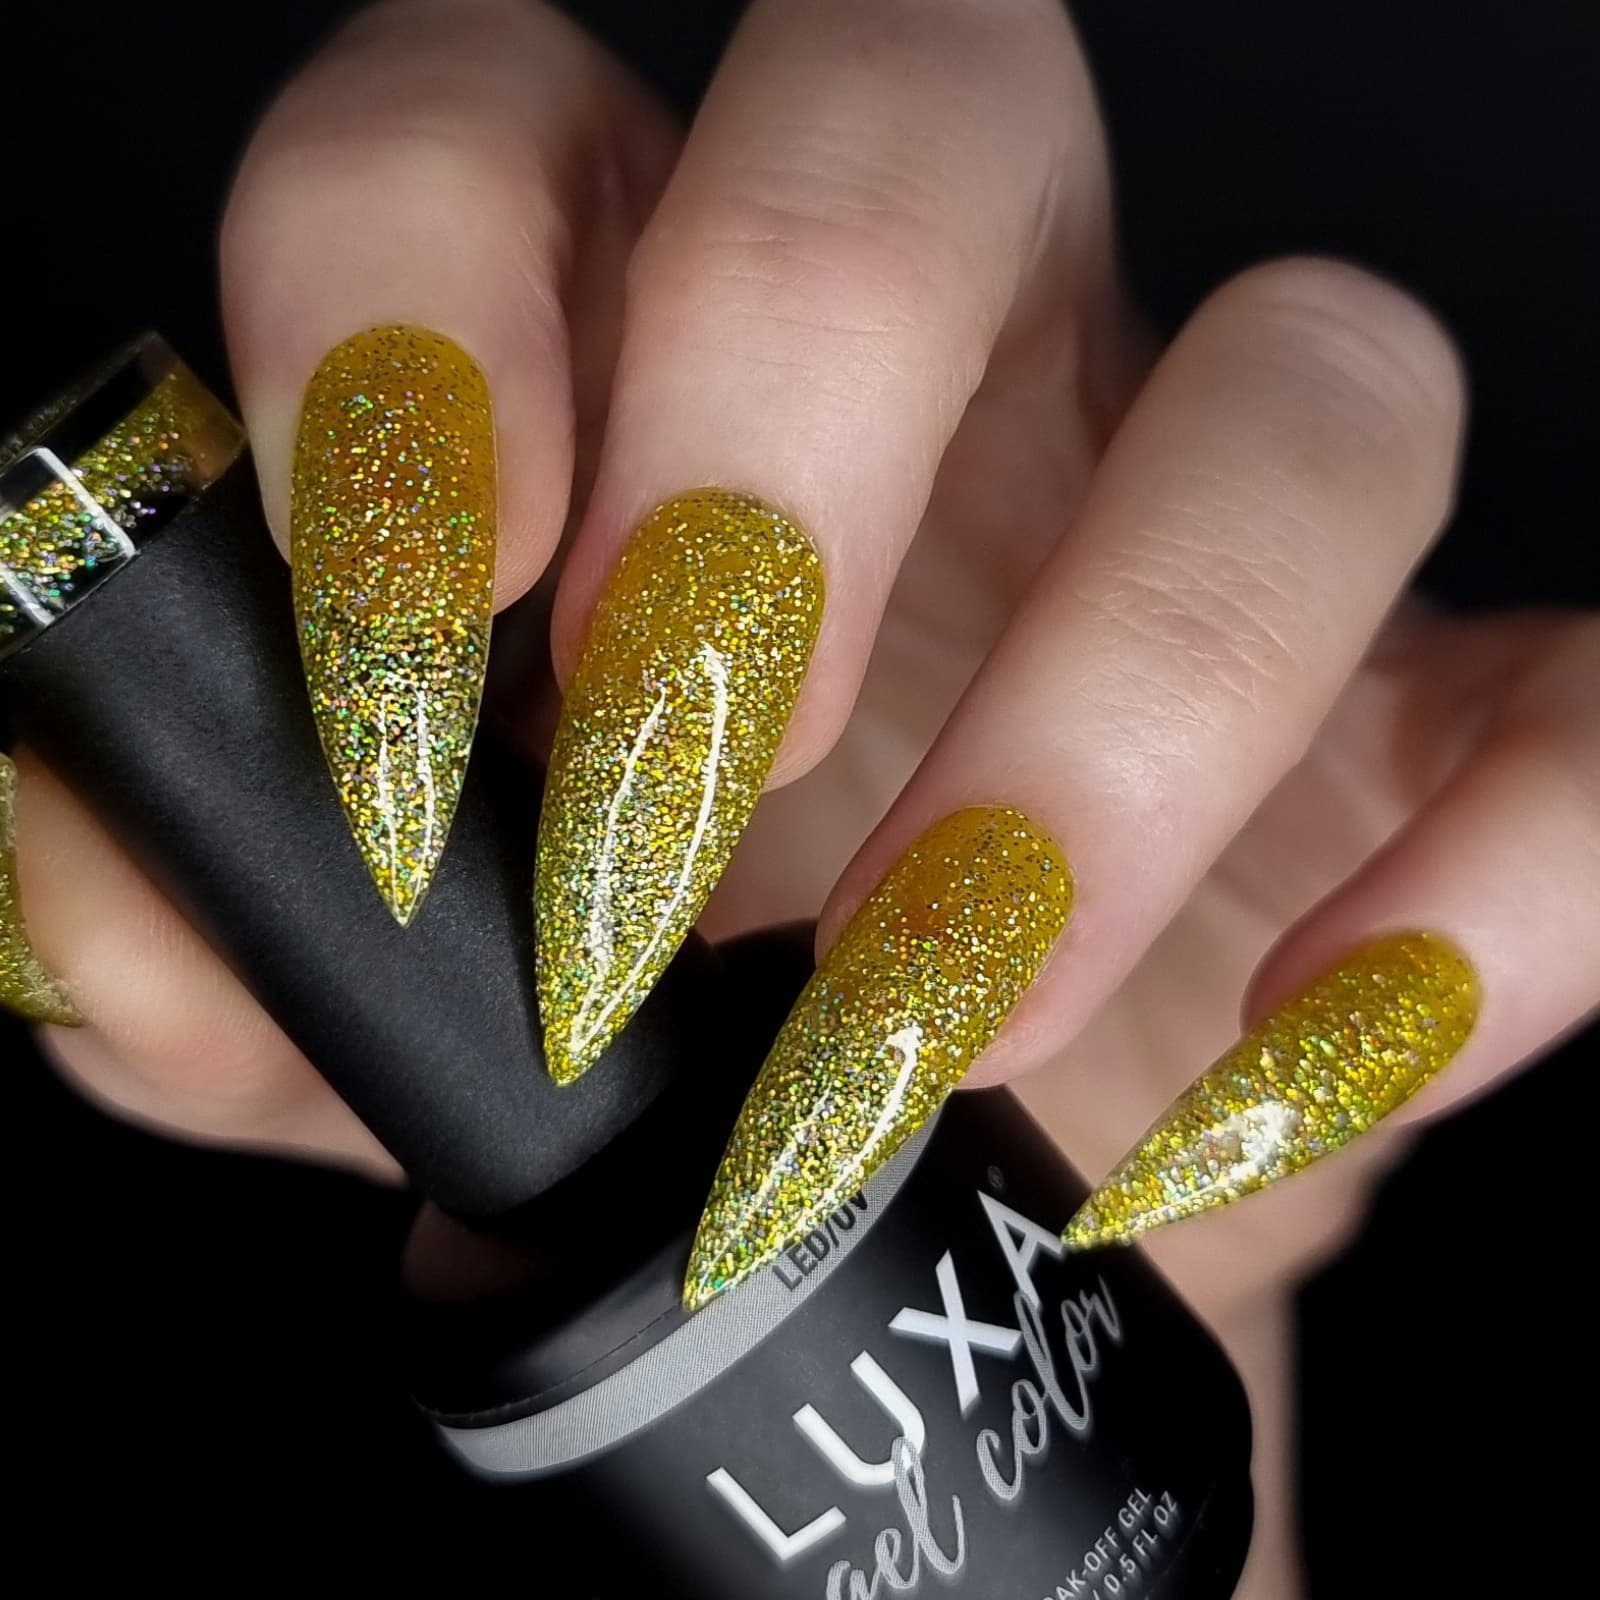 Luxapolish Lemon Eclipse